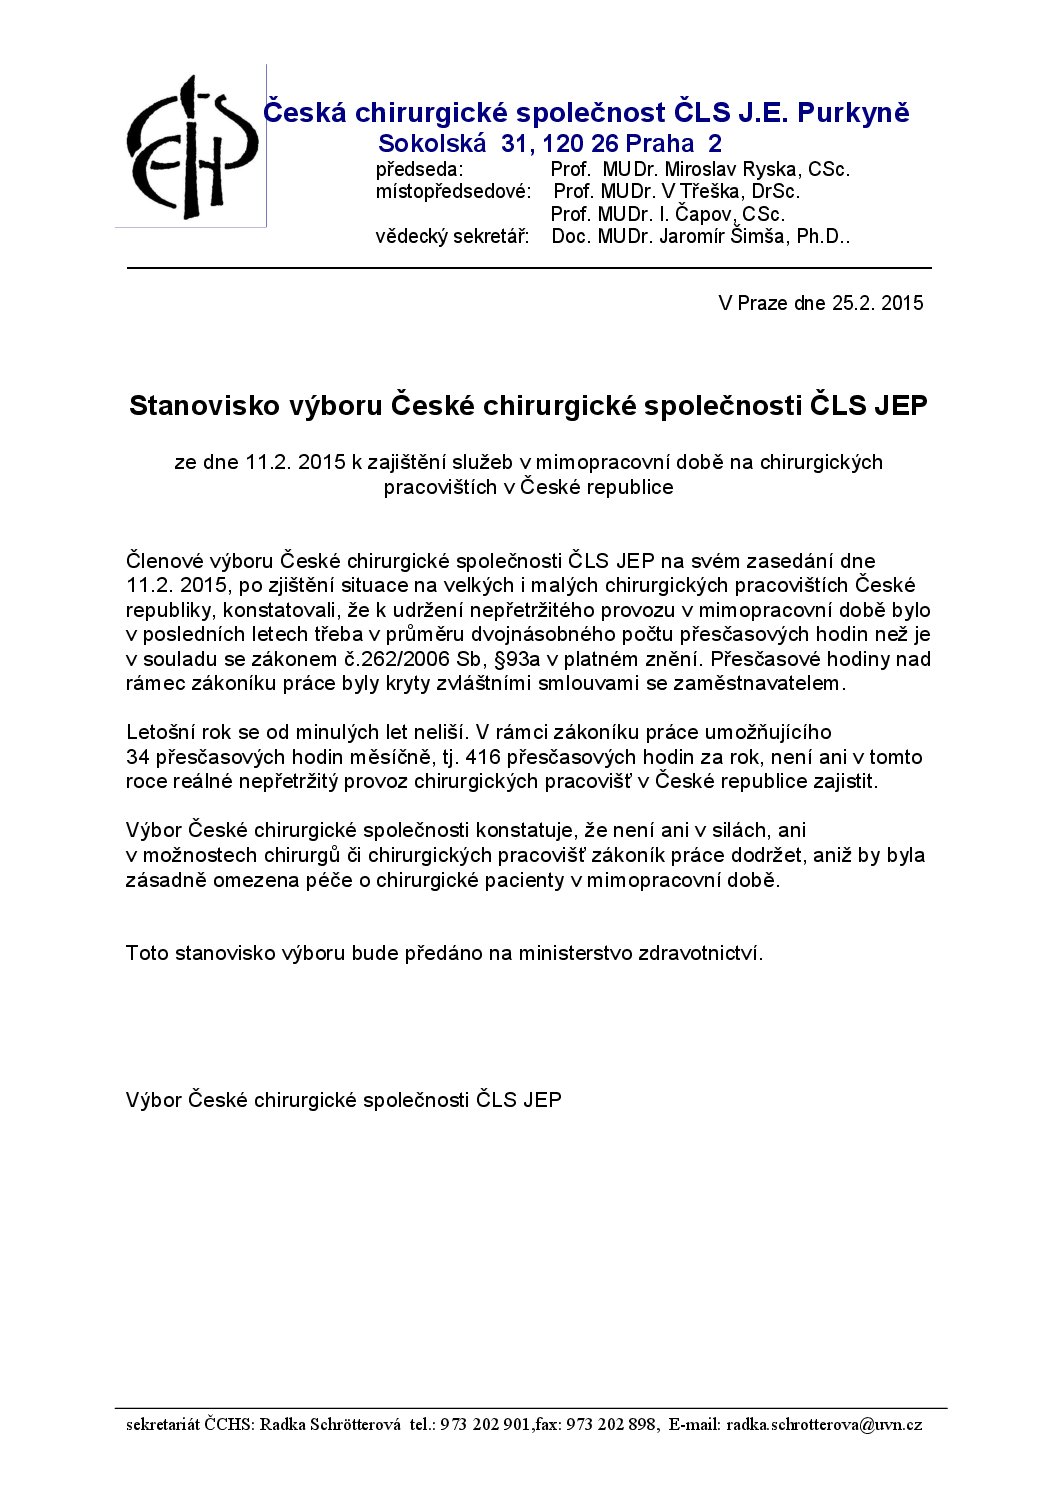 Stanovisko výboru České chirurgické společnosti ČLS JEP k zajištění služeb v mimopracovní době